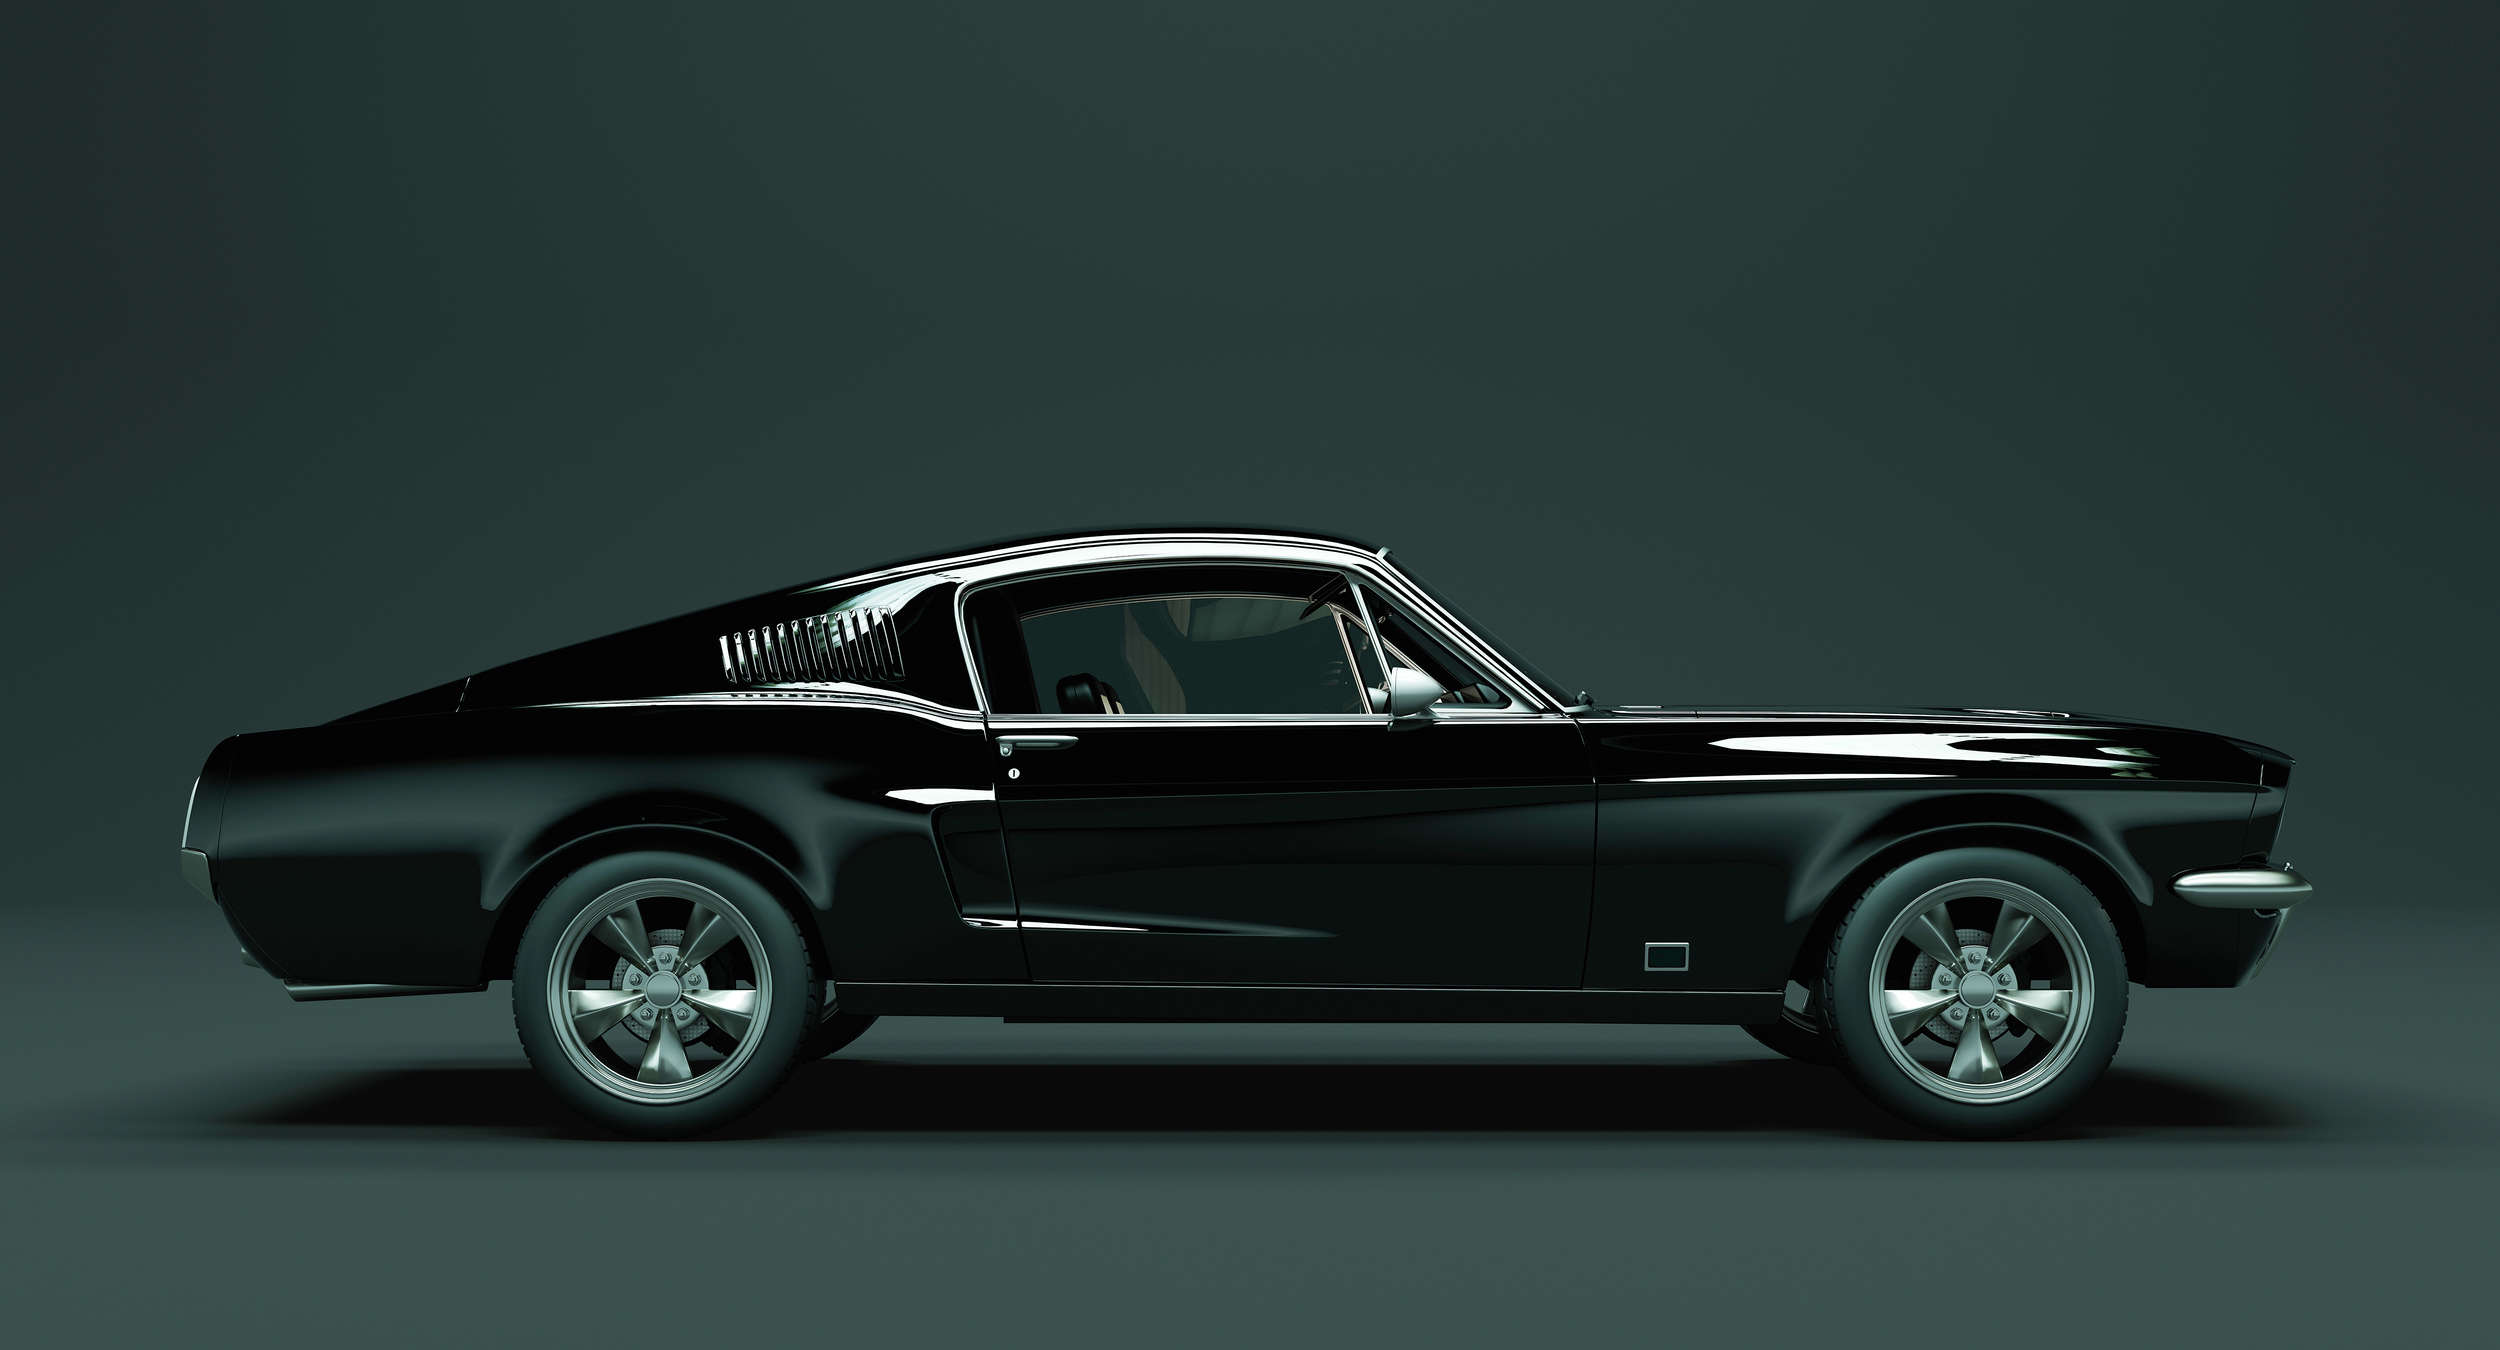             Mustang 1 - Digital behang, Mustang zijaanzicht, Vintage - Blauw, Zwart | Premium gladde fleece
        